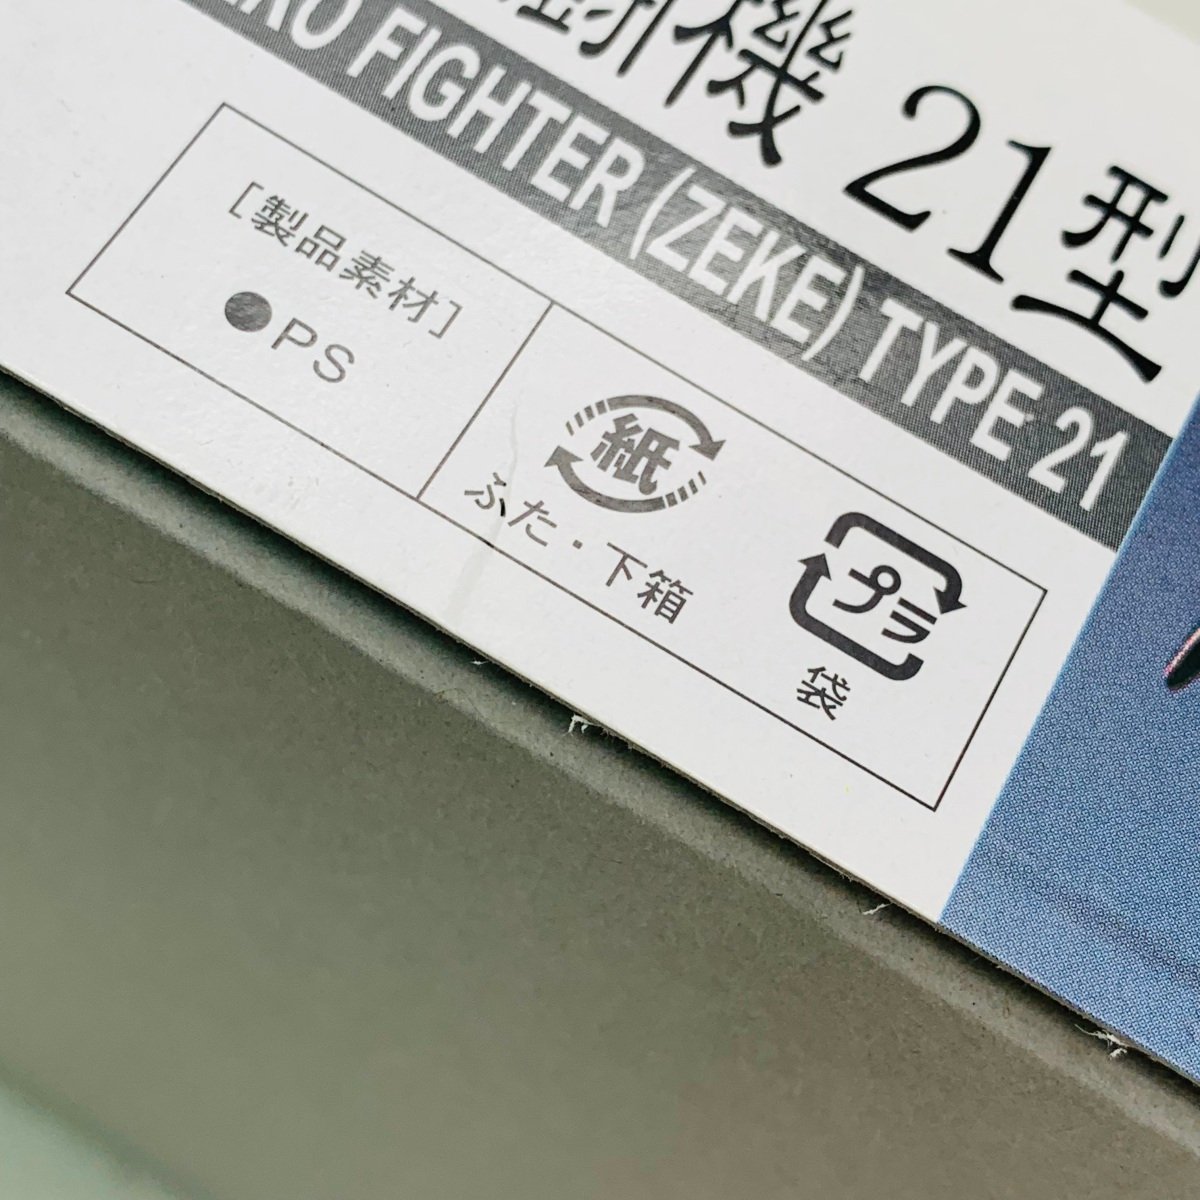 新品未組立 ハセガワ 1/72 D21 三菱 A6M2b 零式艦上戦闘機 21型 Hasegawa Mitsubishi ZERO FIGHTER TYPE21_画像6